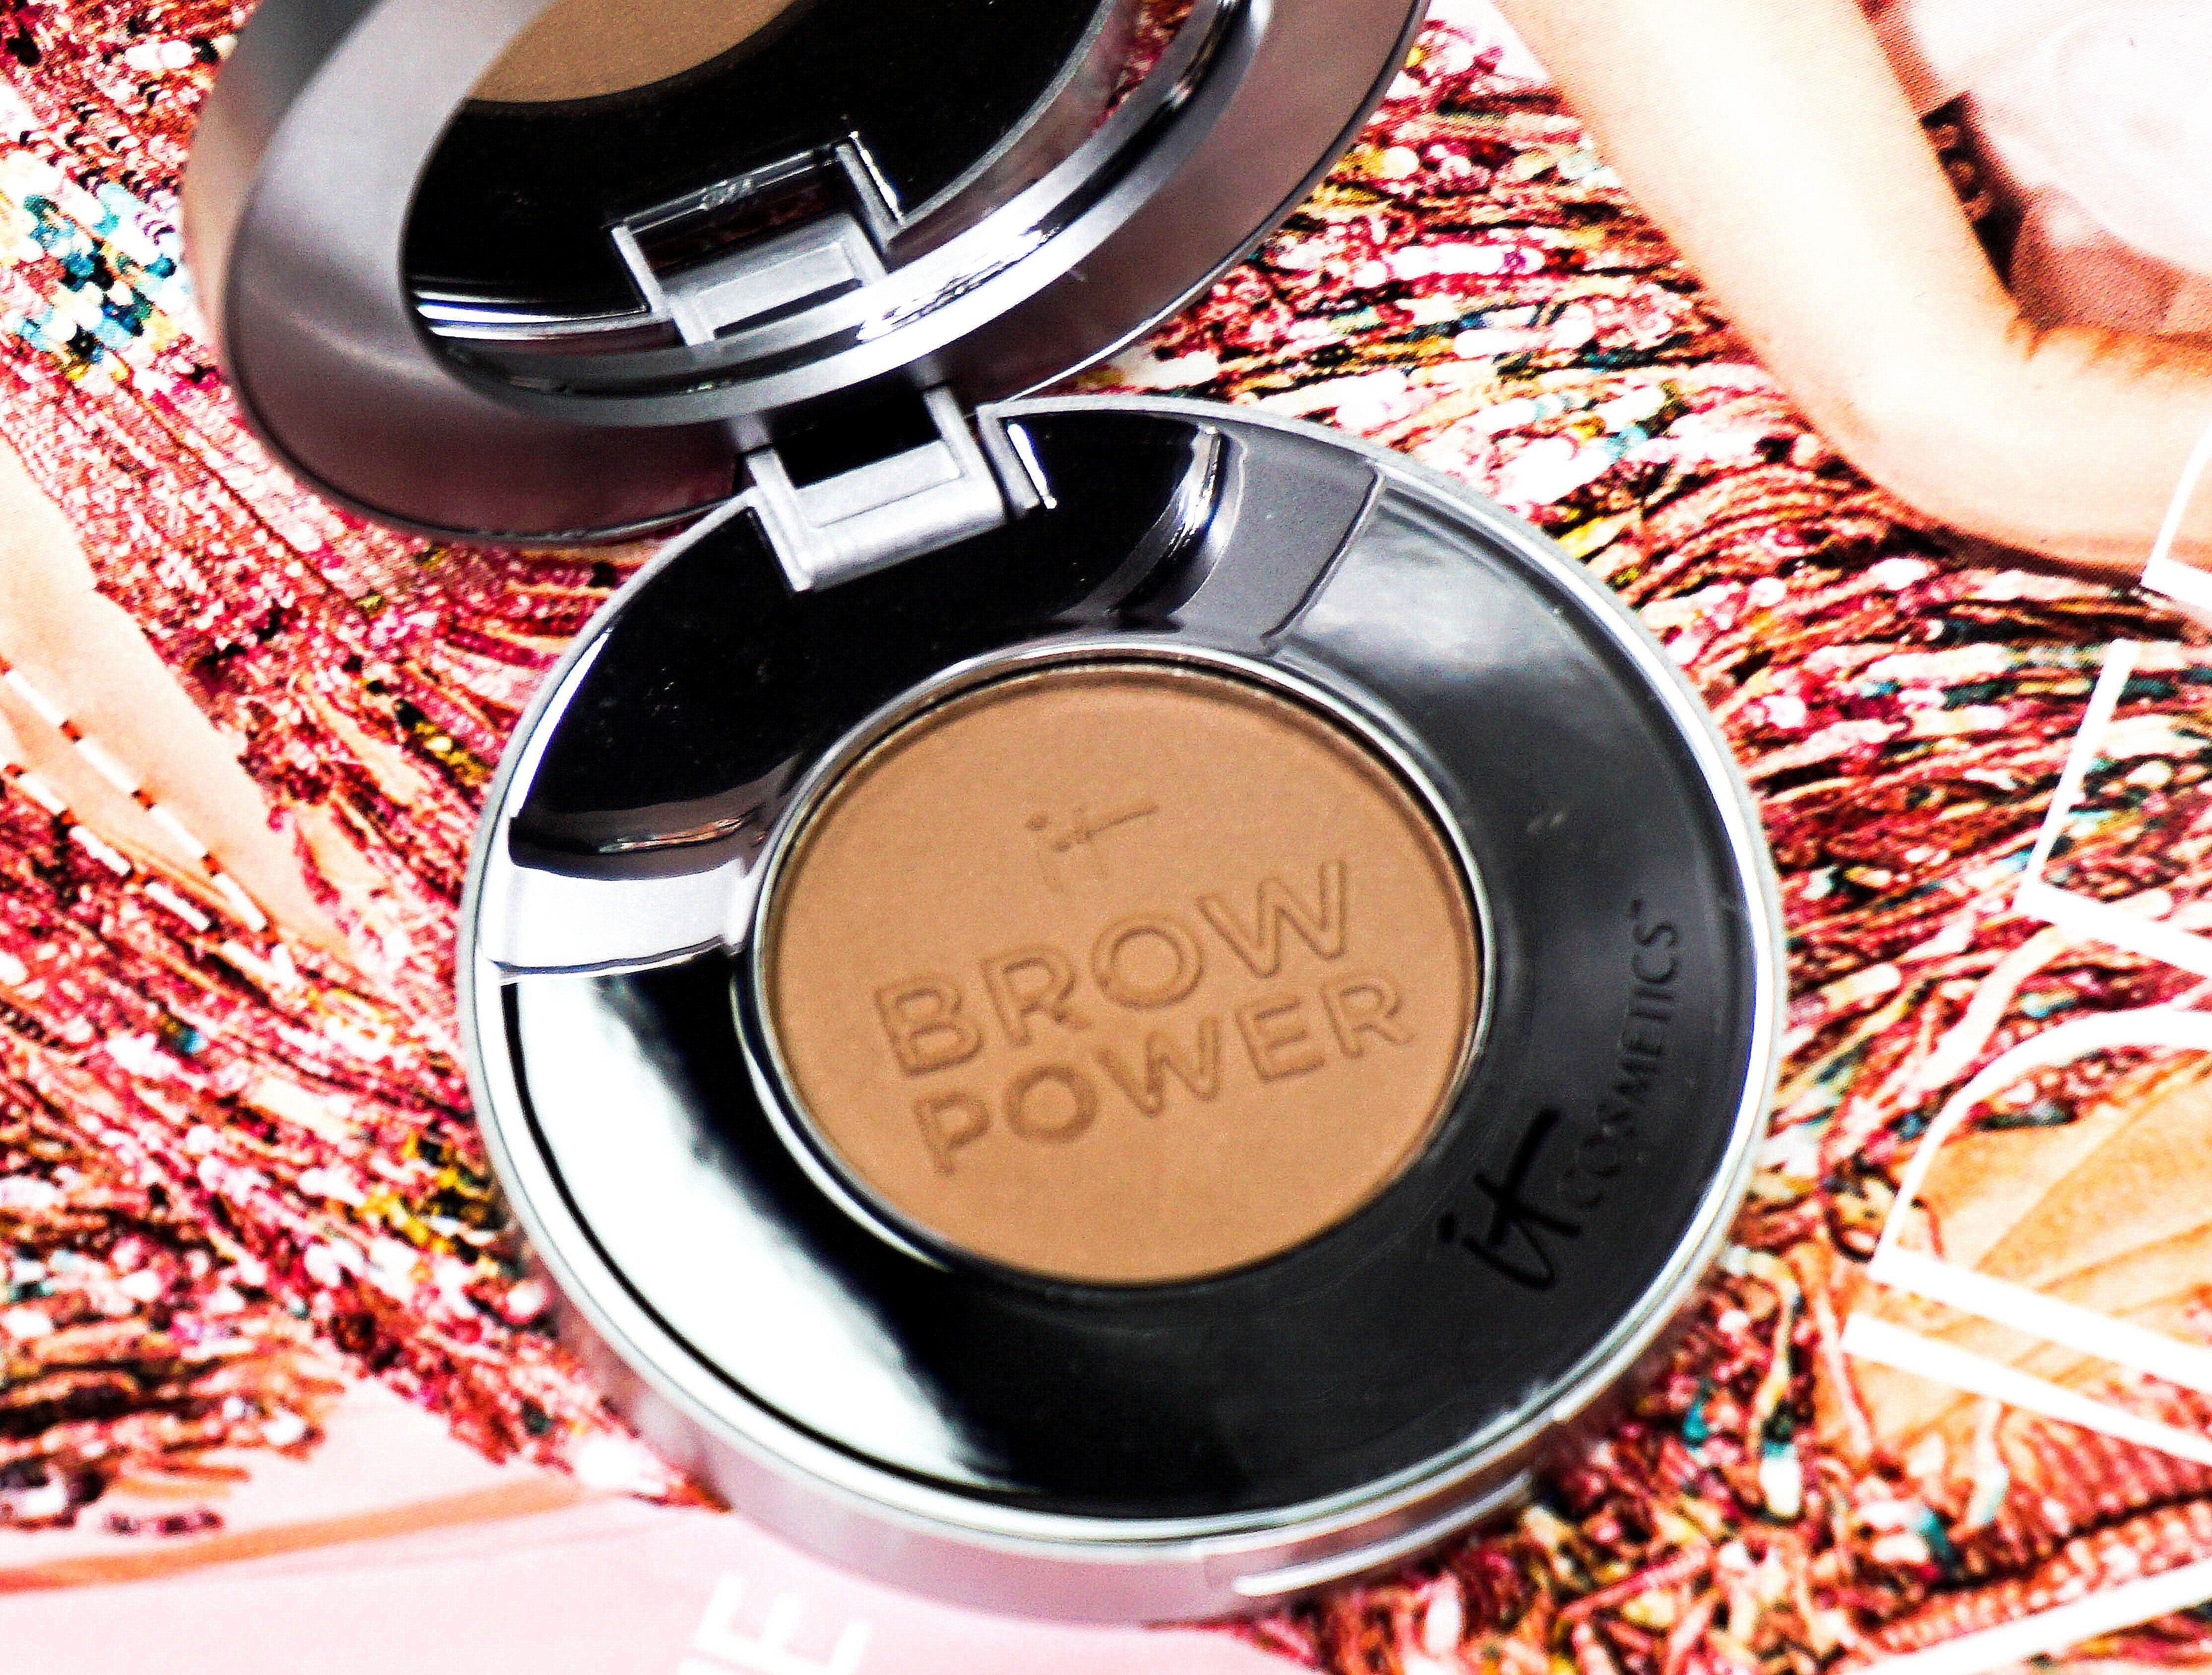 IT Cosmetics Bye Bye Pores Powder & Under Eye Cream & Brow Power Augenbrauenpuder